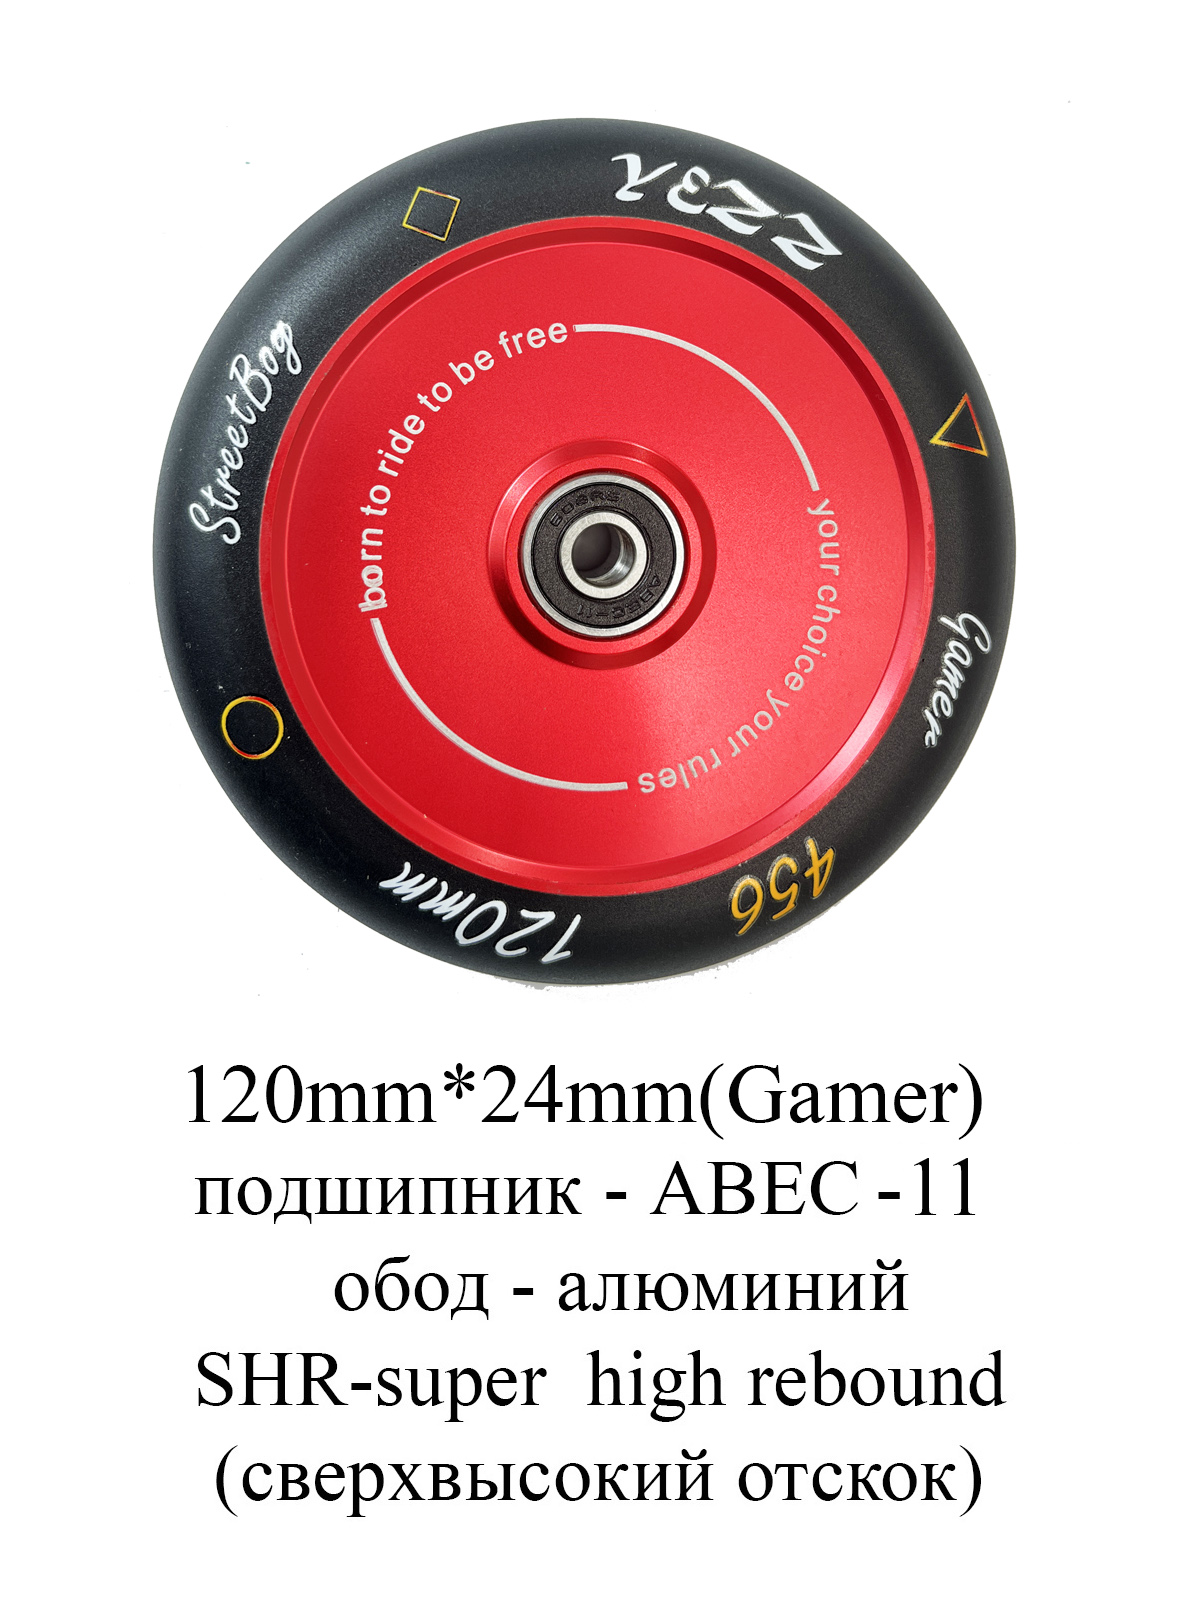 Колесо для трюкового самоката Yezz 120 мм HOLLOW цельнолитое красный gamer